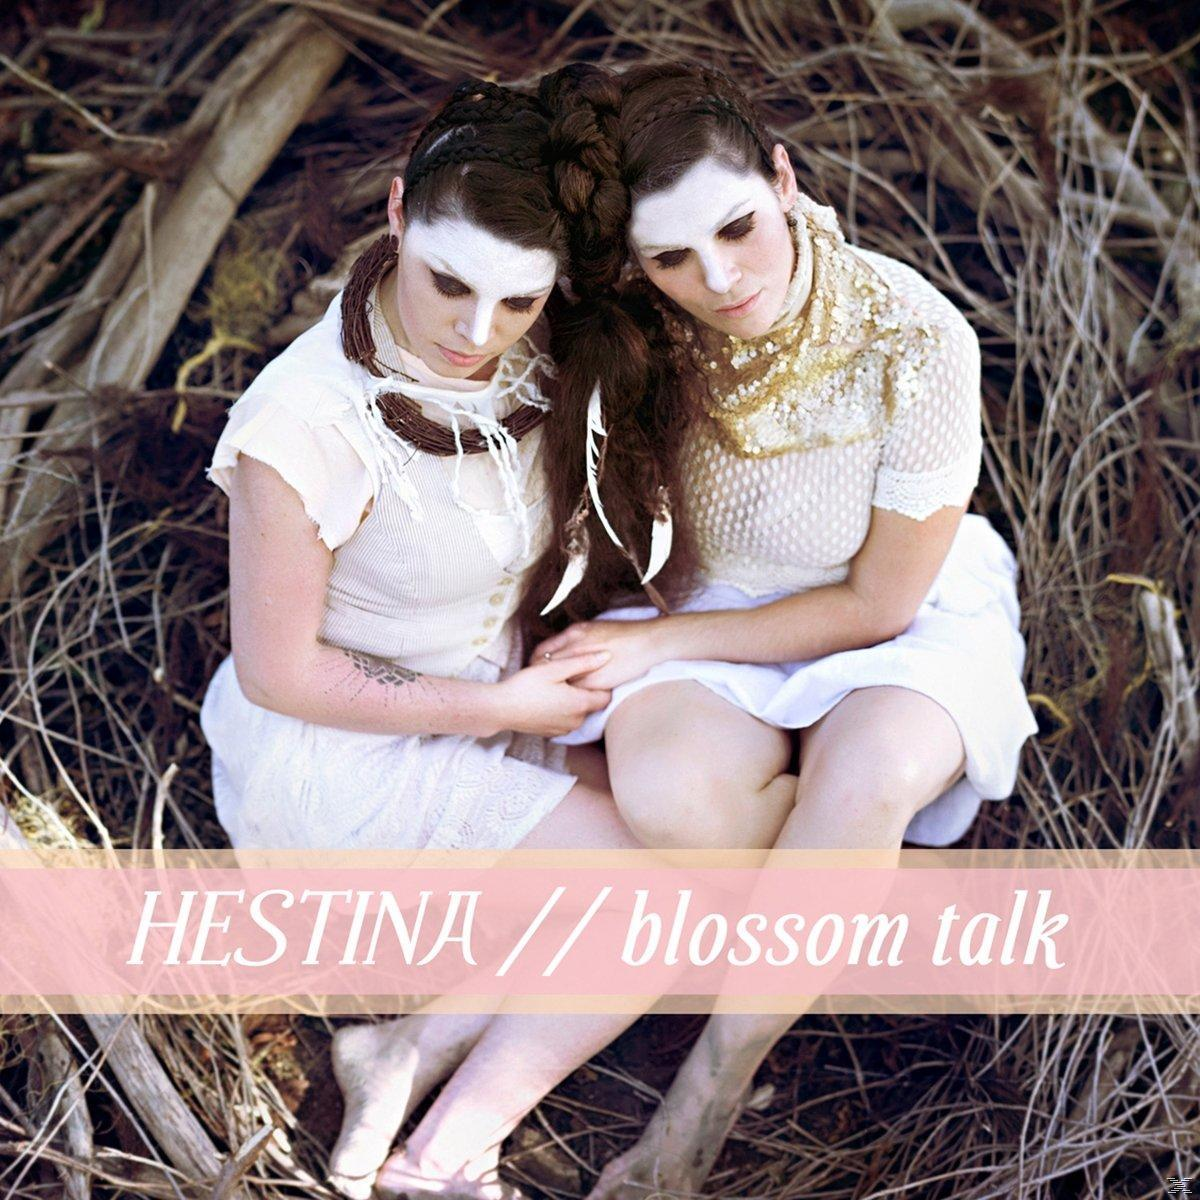 Hestina - - Talk Download) + Blossom (LP